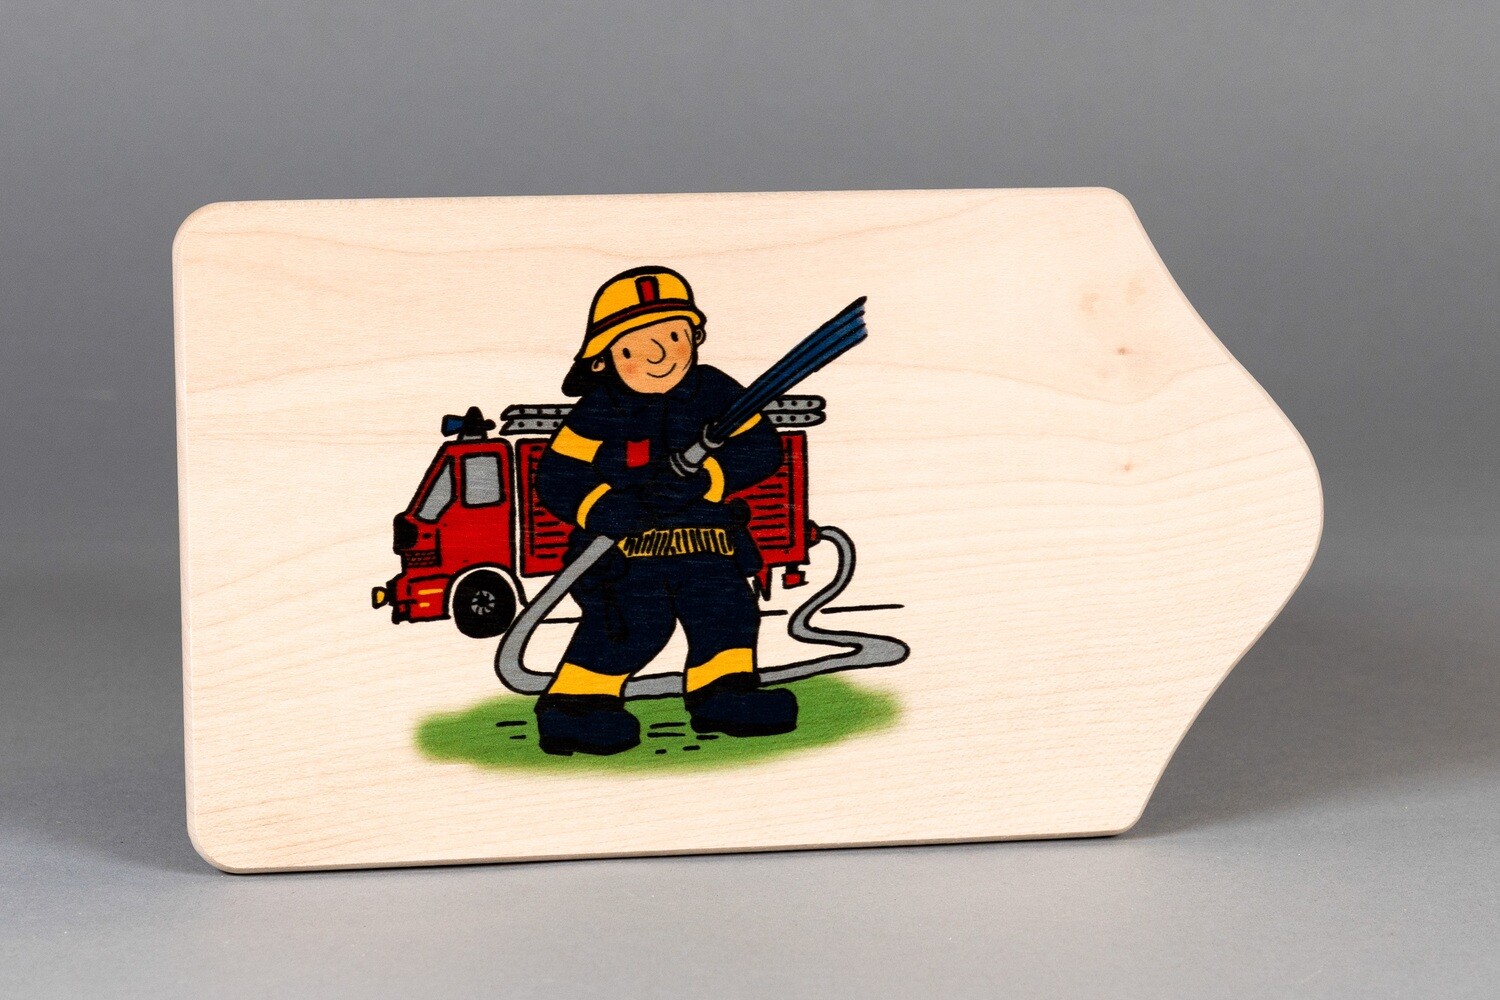 Brotzeitbrett "Feuerwehrmann"
klein, farbig